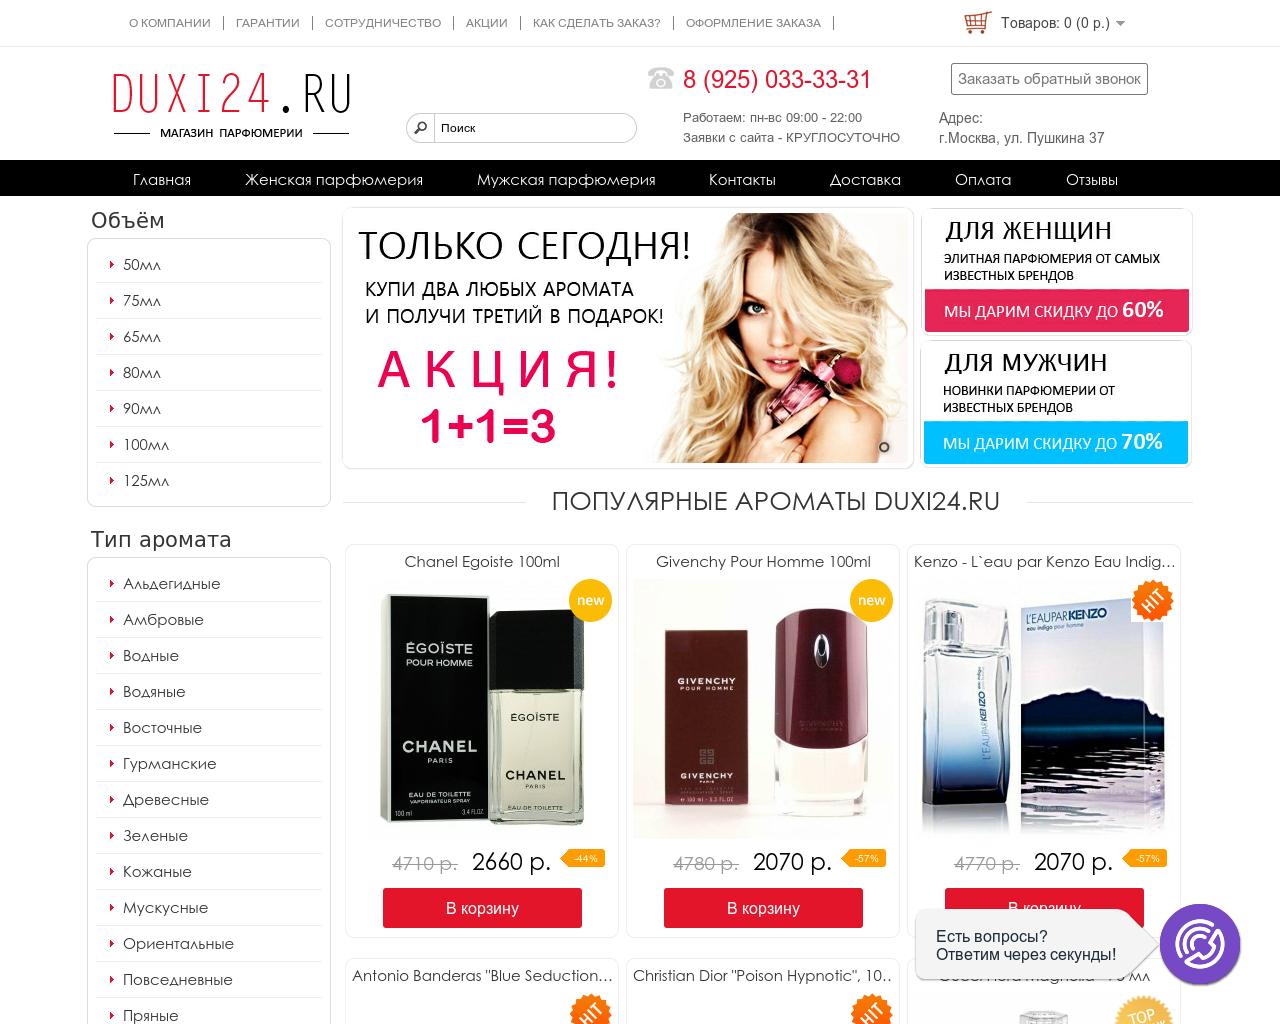 Изображение сайта duxi24.ru в разрешении 1280x1024